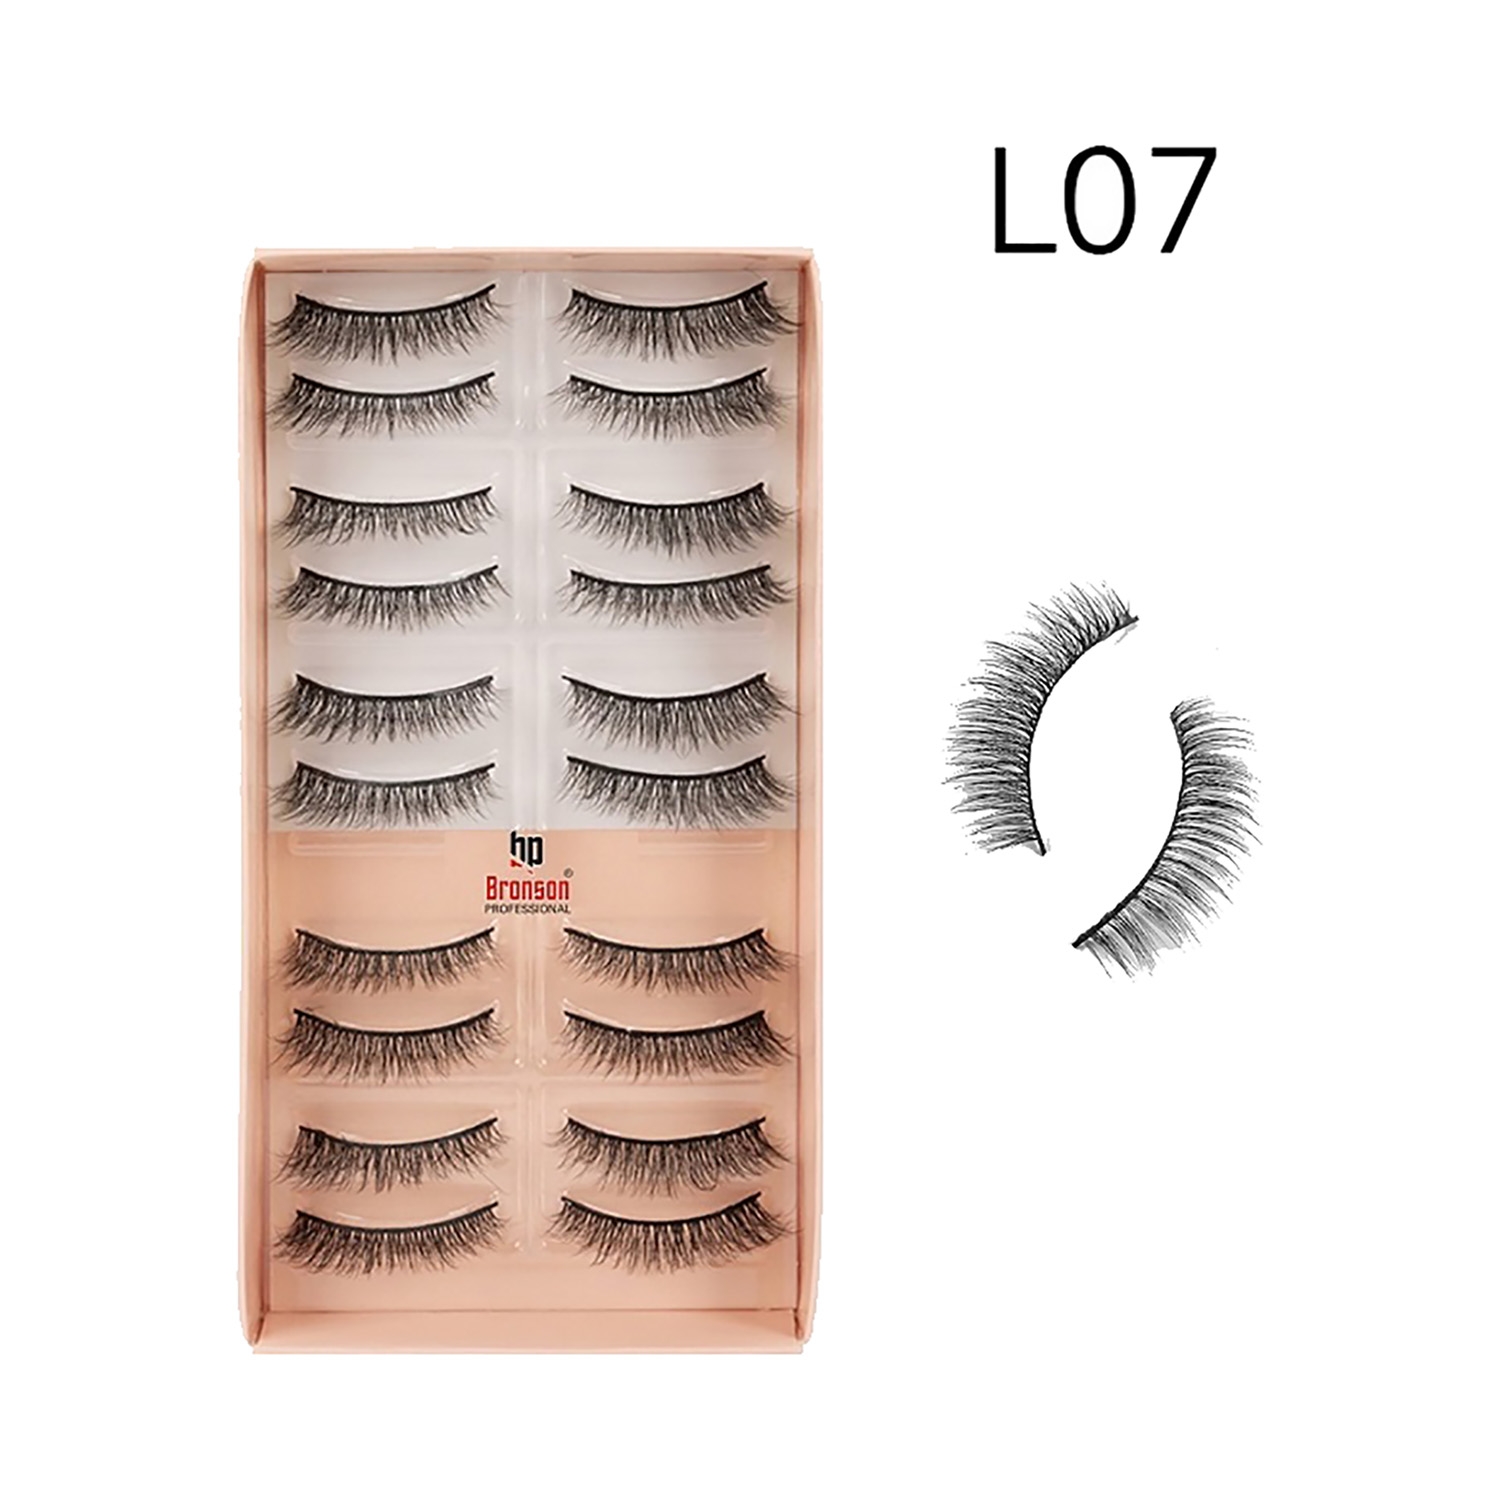 Bronson Professional | Bronson Professional Eyelash Set 3D False Long & Natural Eye Makeup L07 (10 Pair)